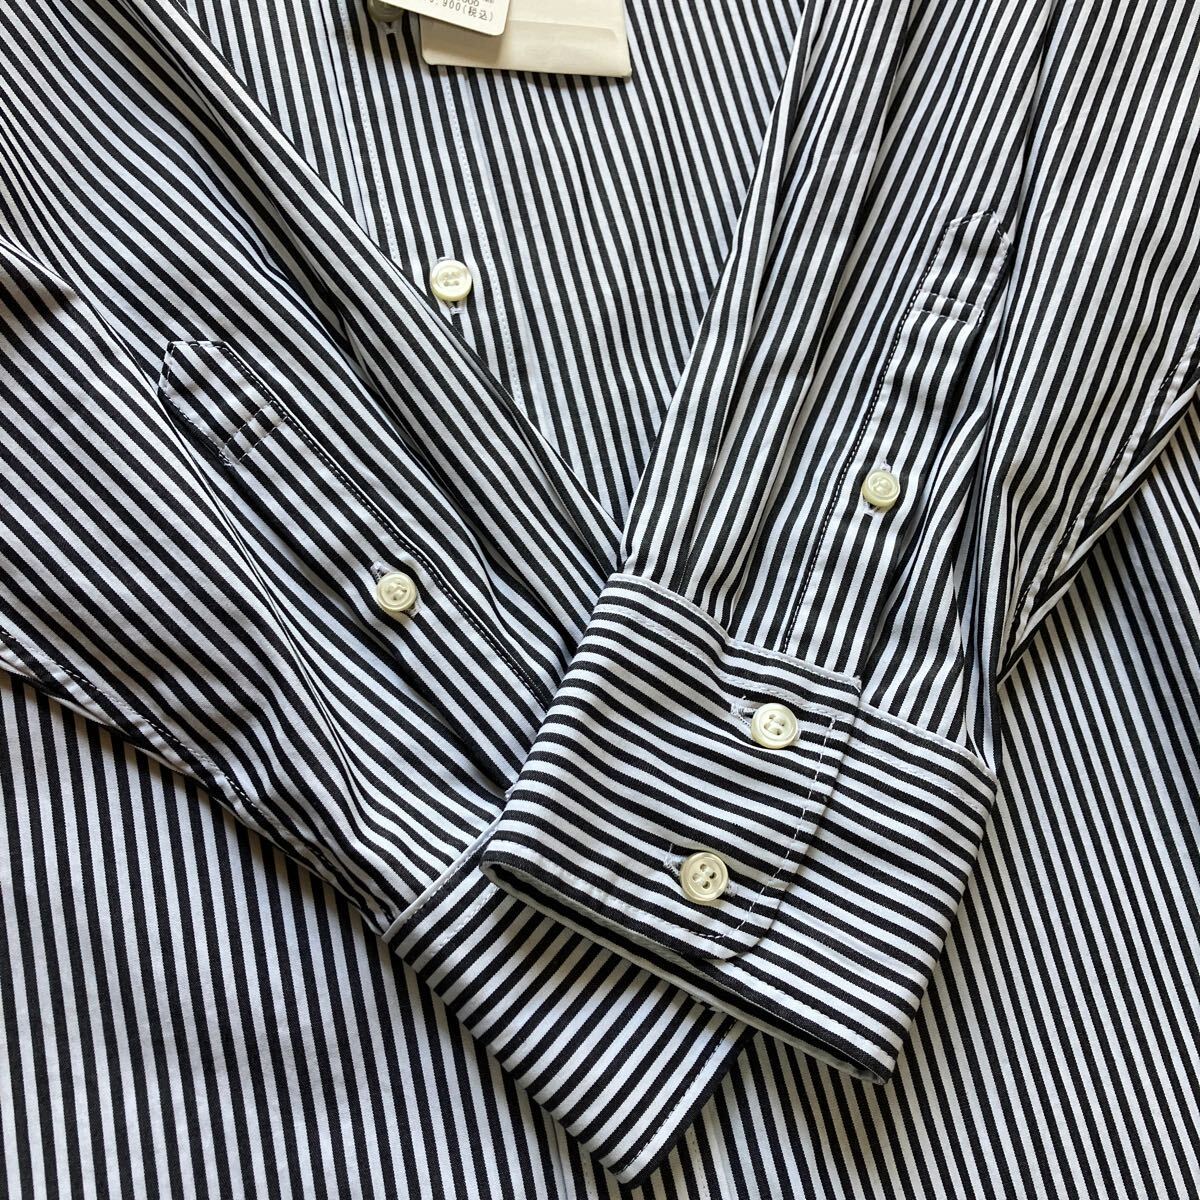 昨年購入新品 SLOBE IENA コットンブロードレギュラー シャツ 黒X白 トップス (スローブ イエナ)☆ヤフネコ!無料_画像4